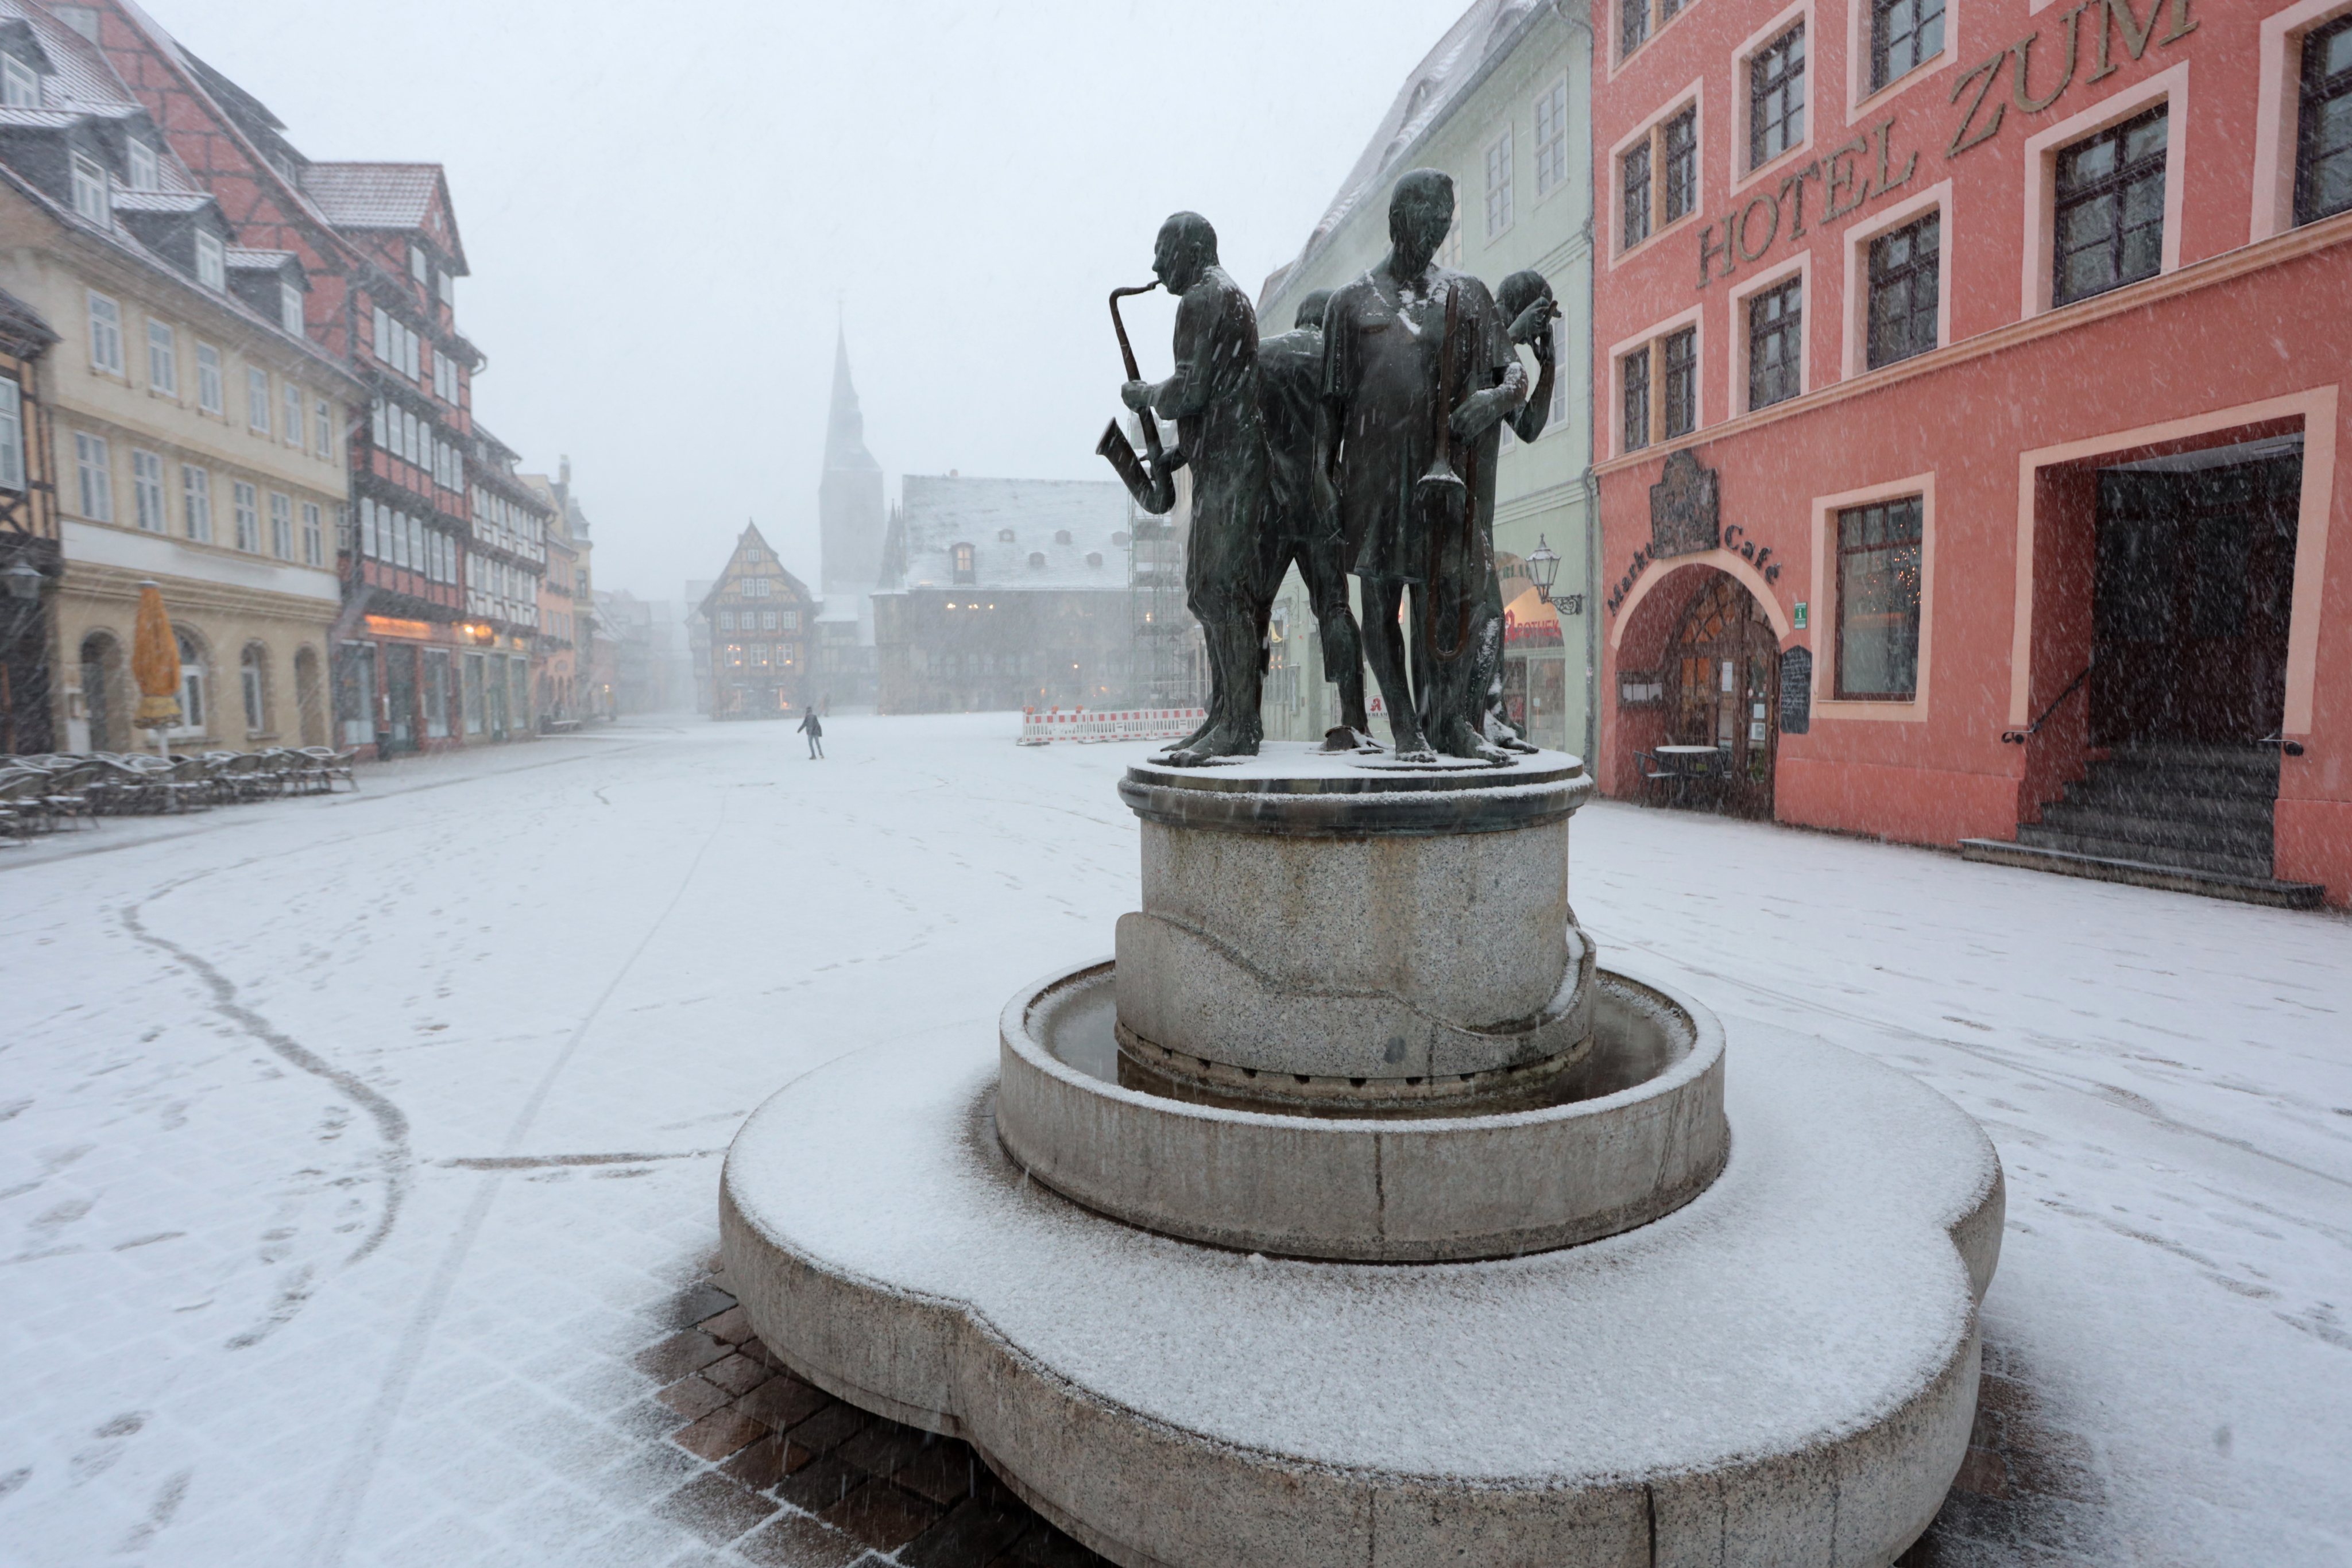 Queda de neve em Quedlimburgo, no norte da Alemanha, no dia 20 de janeiro